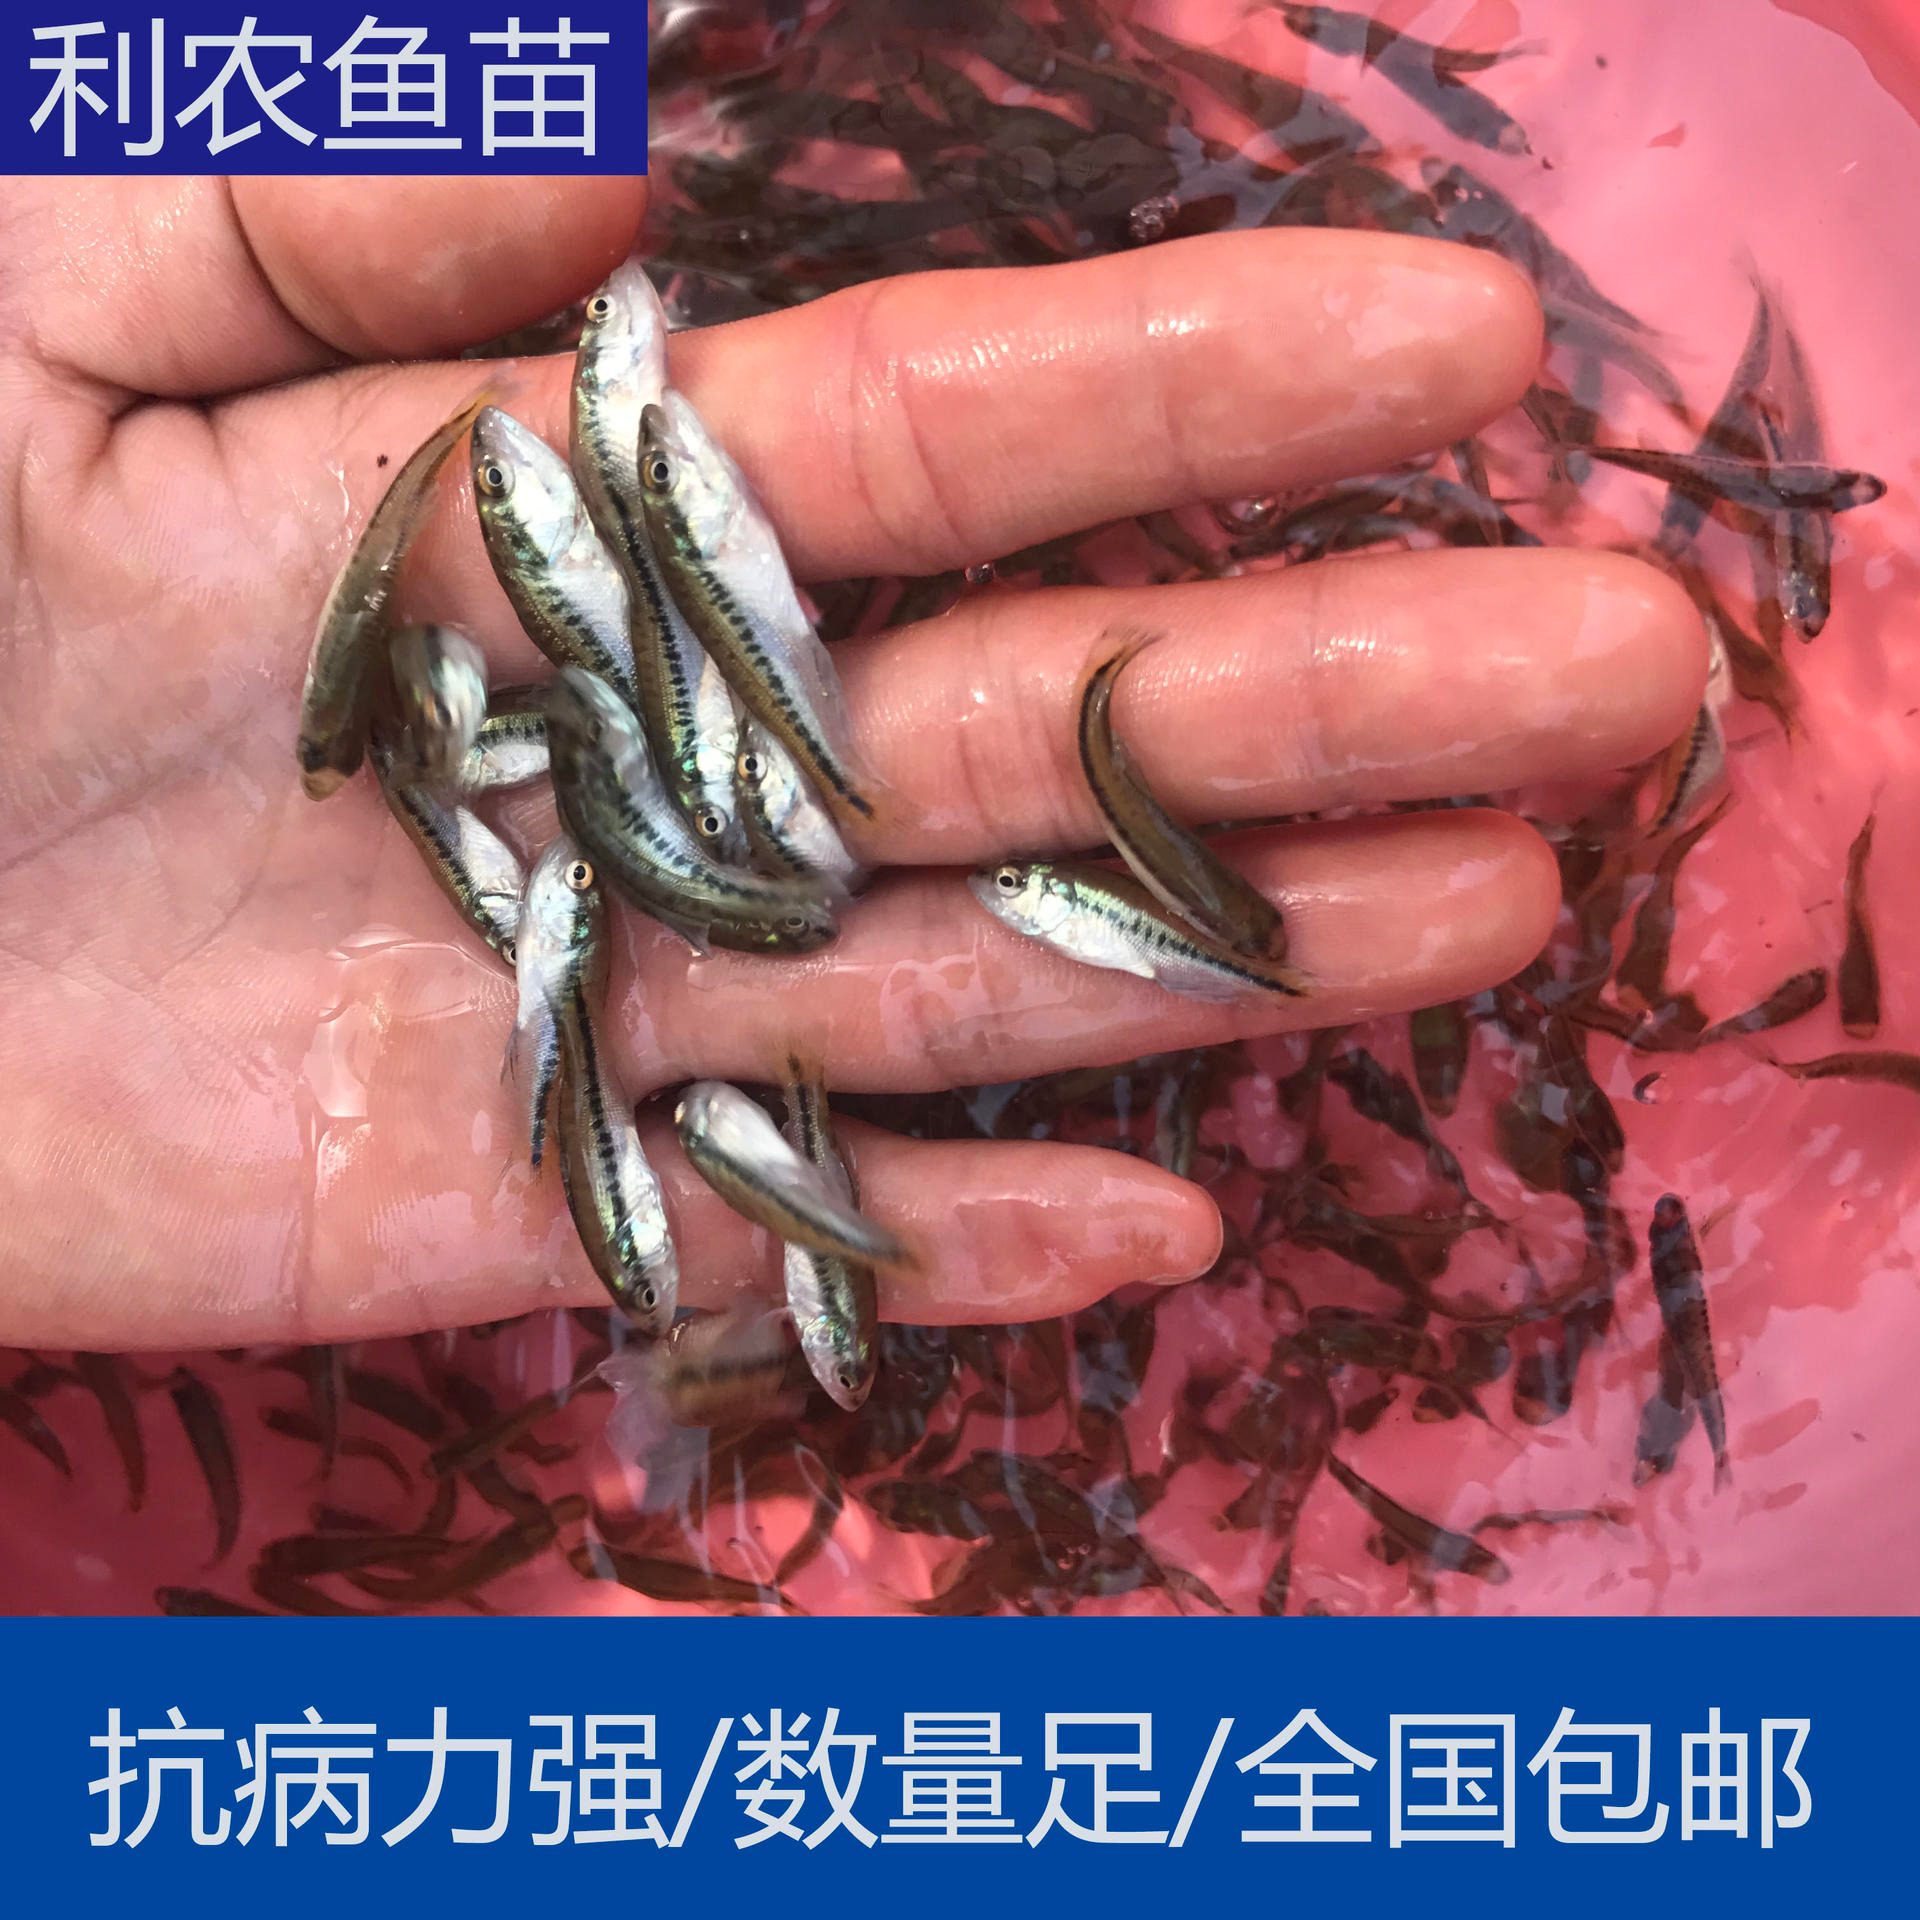 包邮包活 福州长乐淡水加州鲈鱼苗批发价格 5cm鲈鱼苗养殖基地 大量出售